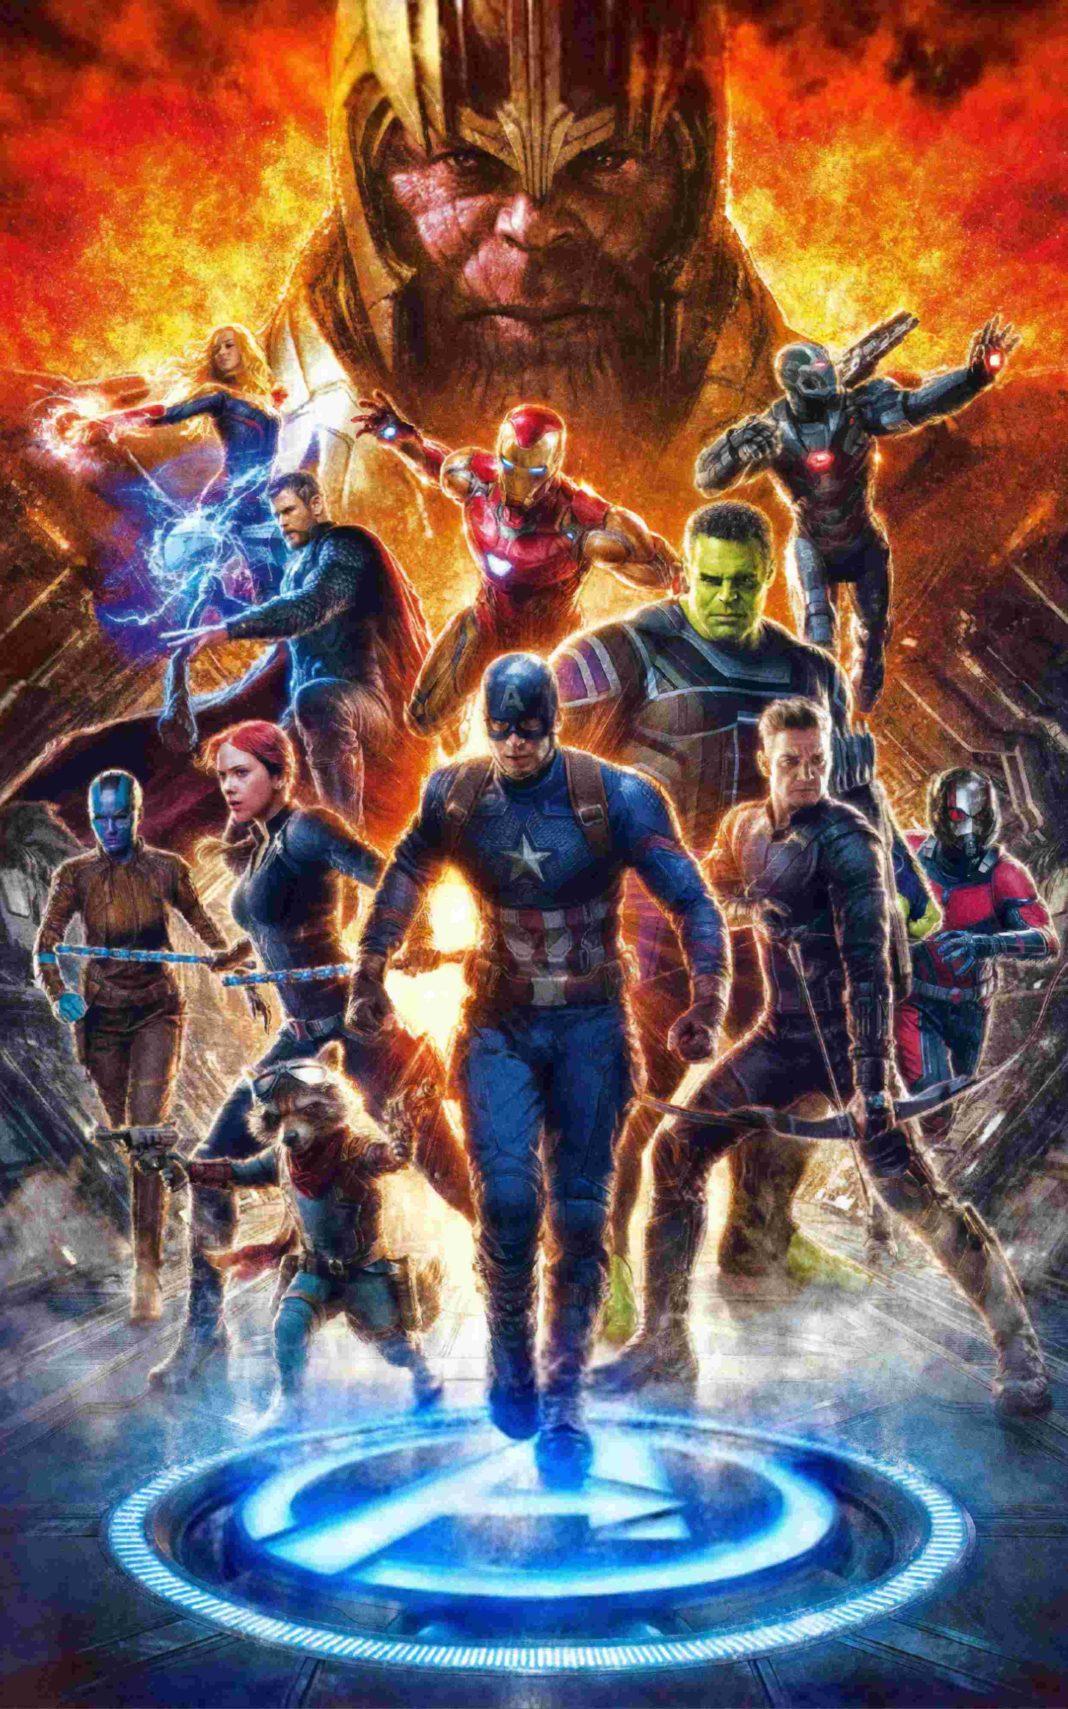 Avengers Endgame Wallpaper 4K. Avengers 4 Image 2019